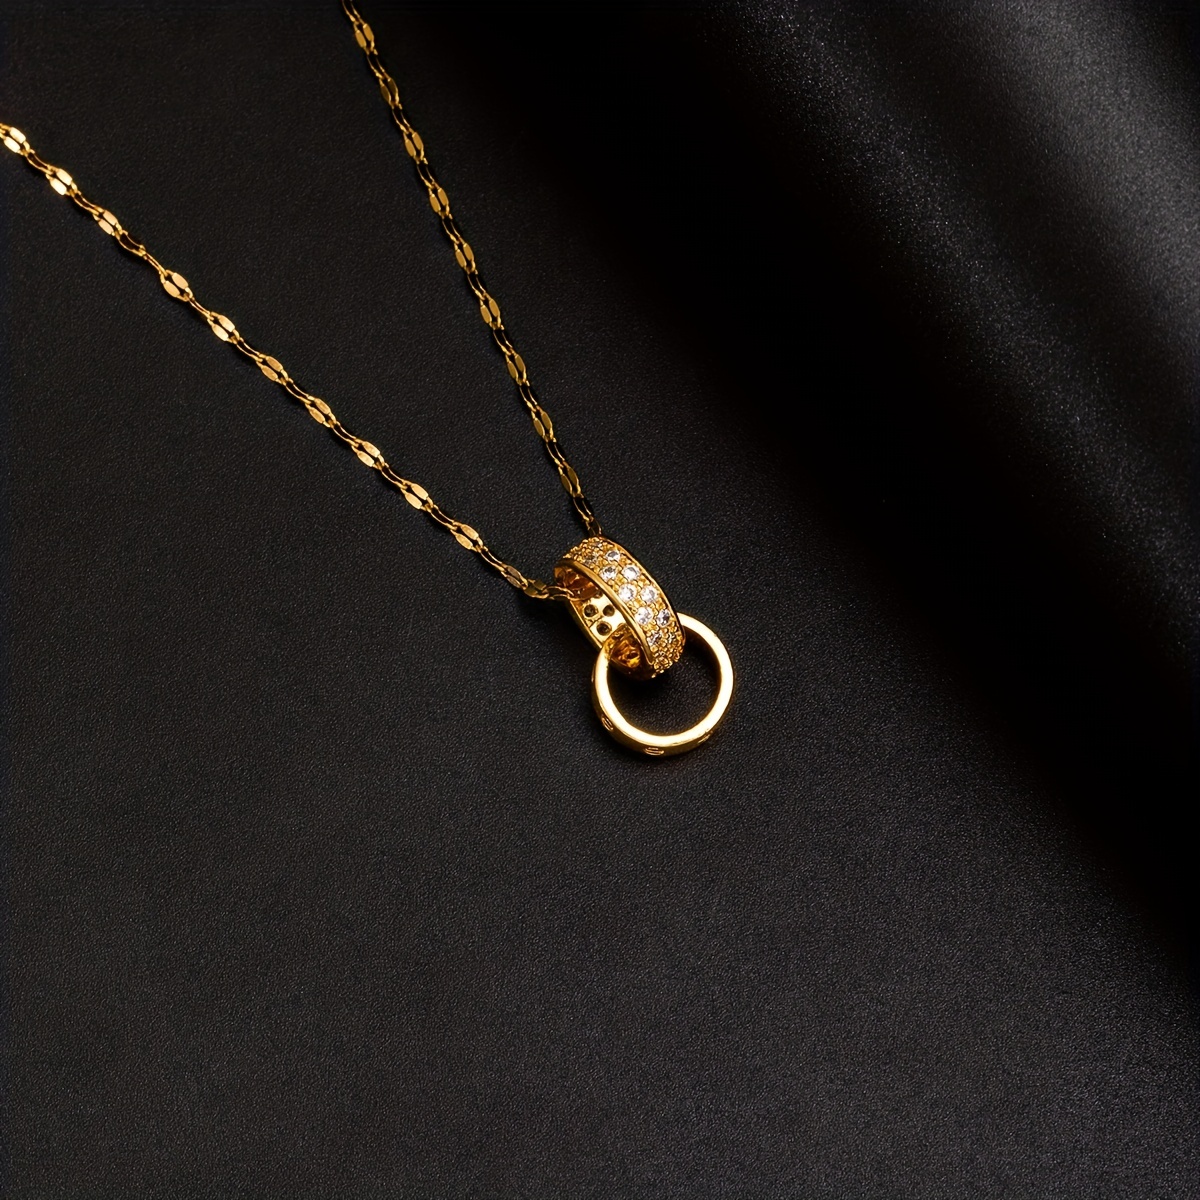 Men's Double Ring Necklace, Temperament Light Luxury Premium Sense